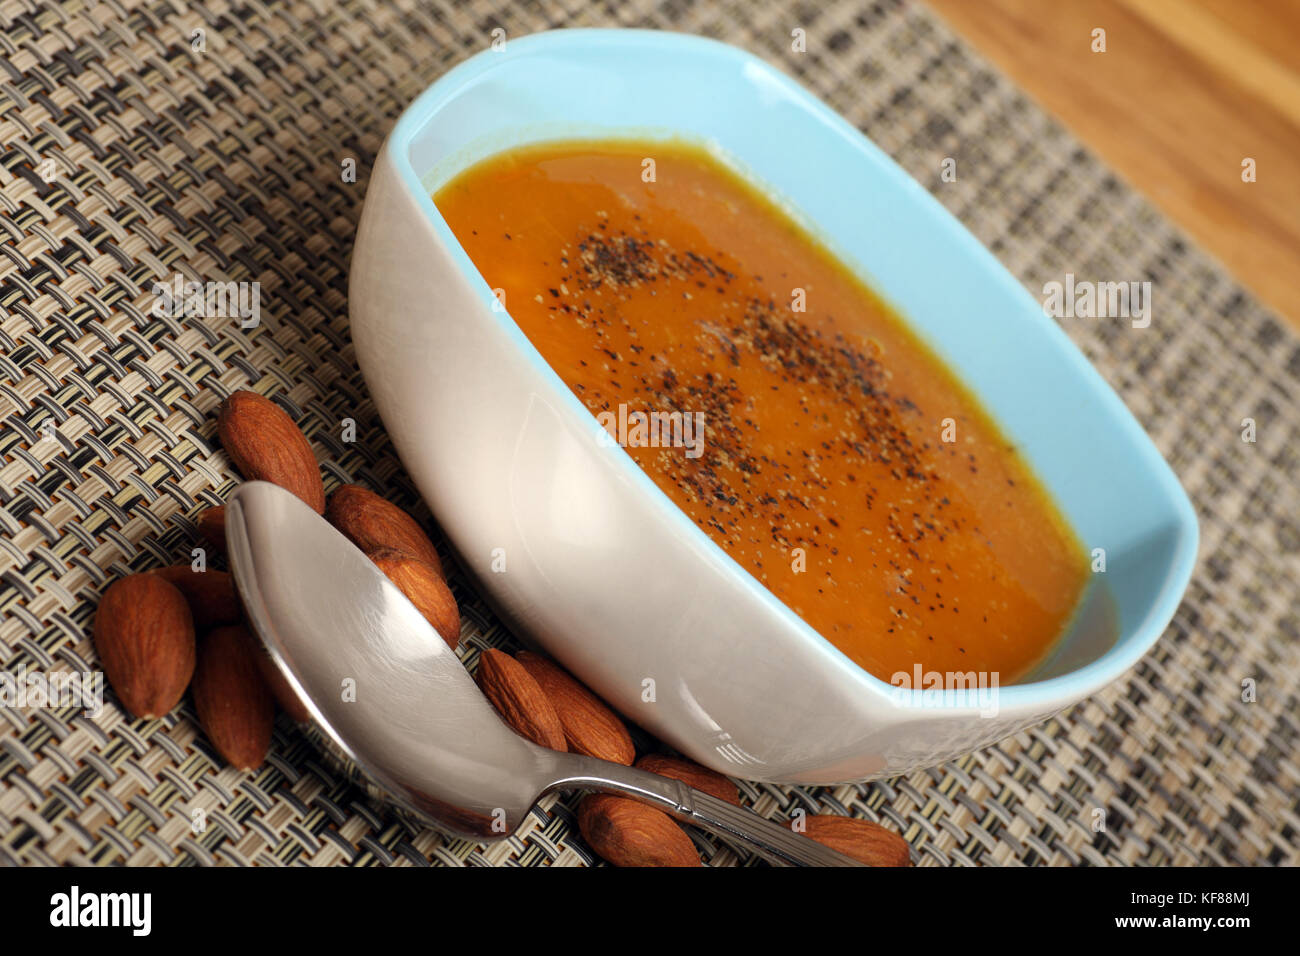 Fresca zuppa fatta in casa, arrosti di zucca con pepe nero. una manciata di mandorle per completare il pasto sano. Foto Stock